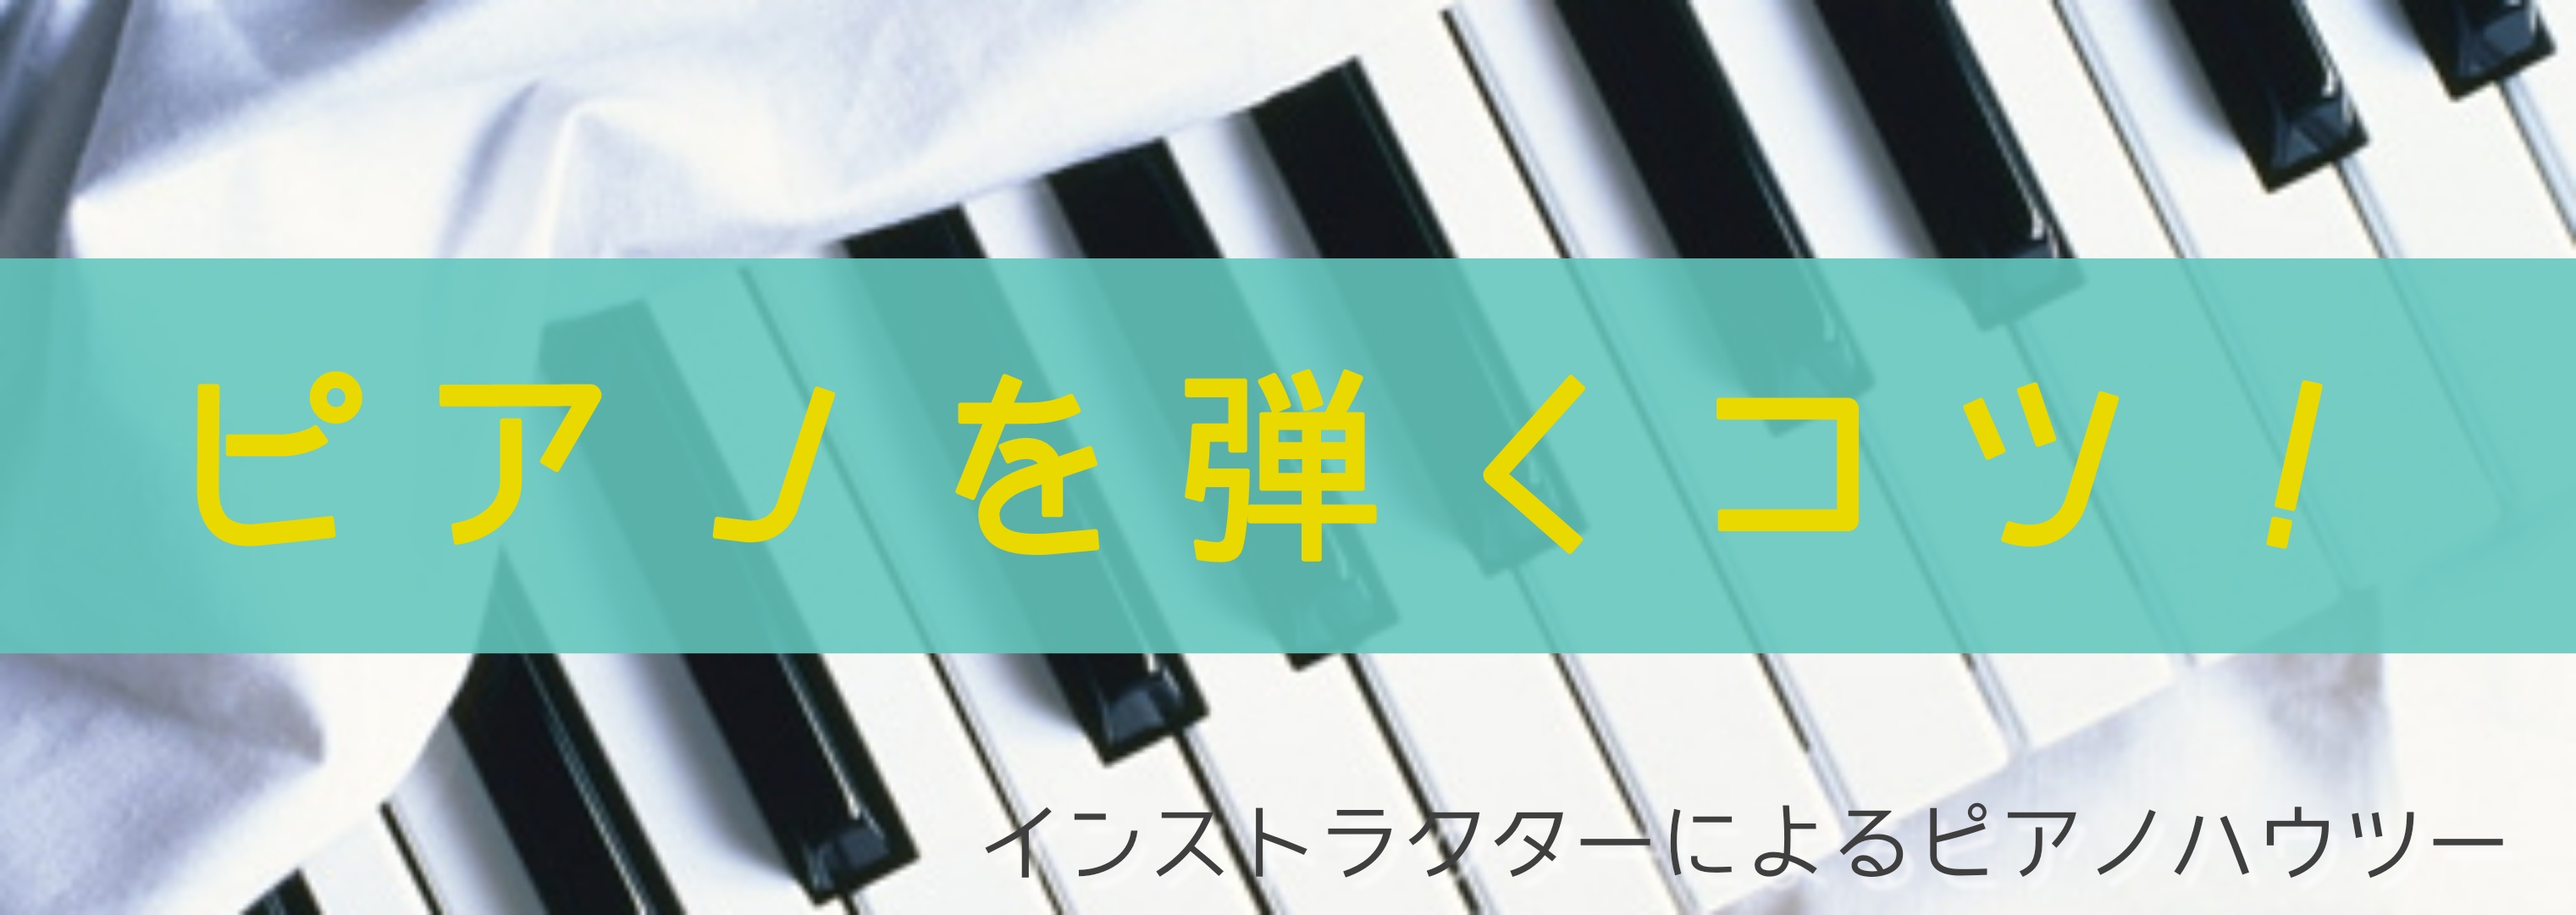 ピアノサロン 知っておきたい ピアノを弾くコツvol 1 ミ ナーラ奈良店 店舗情報 島村楽器